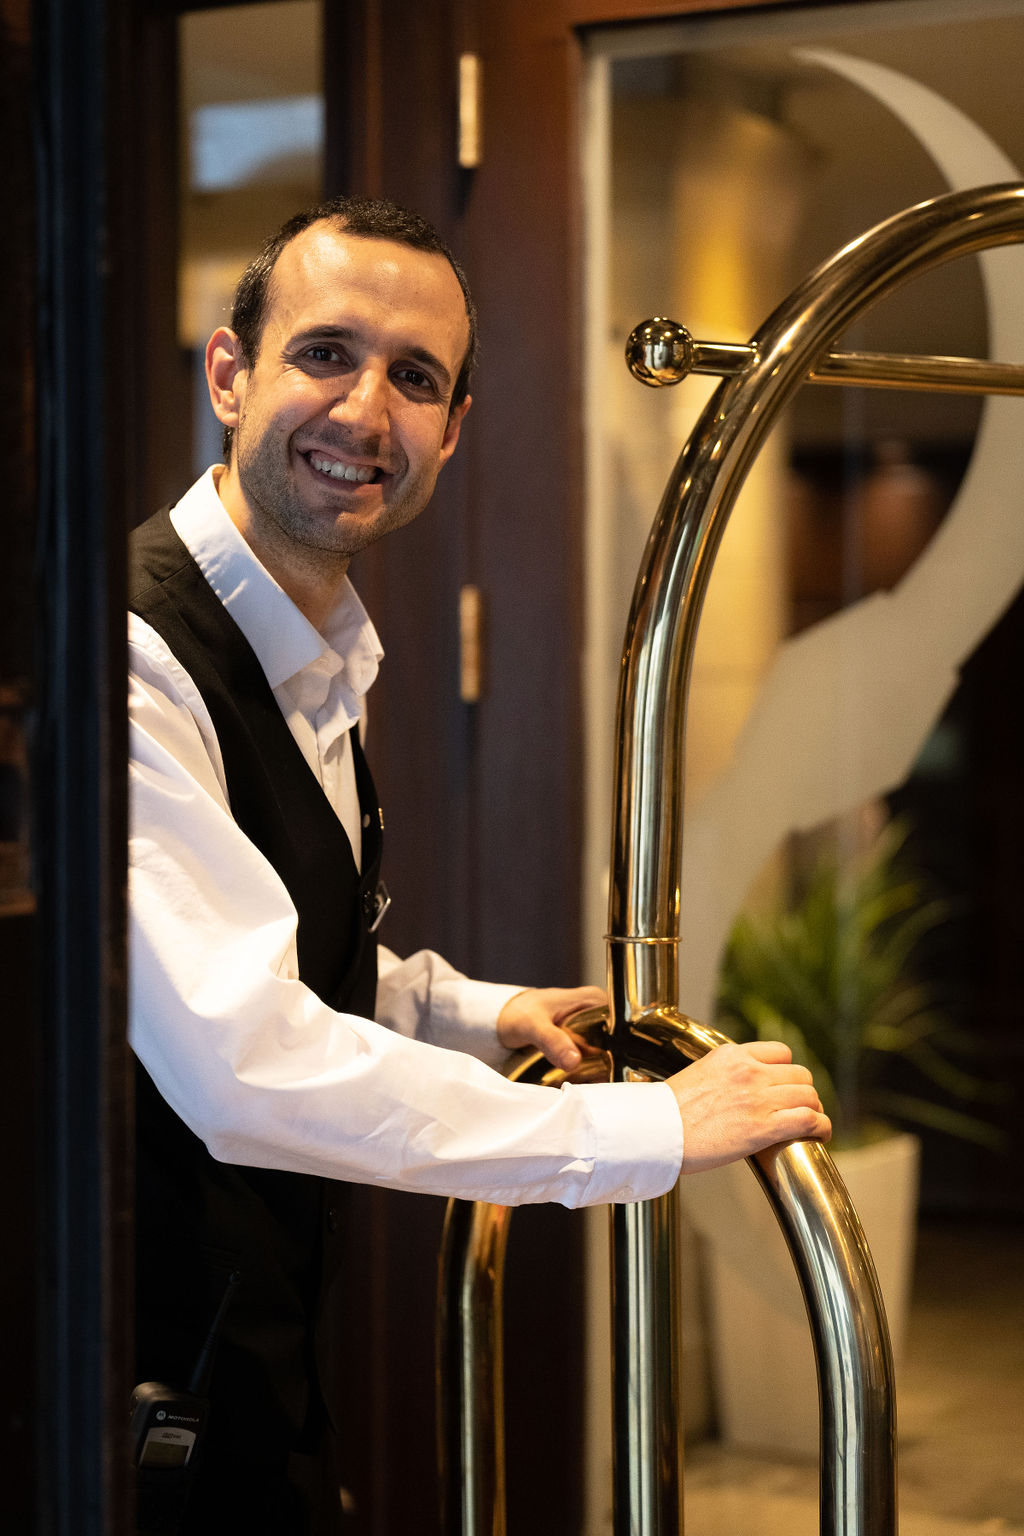 Un des meilleurs hôtels boutique du vieux montréal pour le sourire et le service exceptionnel de ses employés au saint-sulpice hôtel